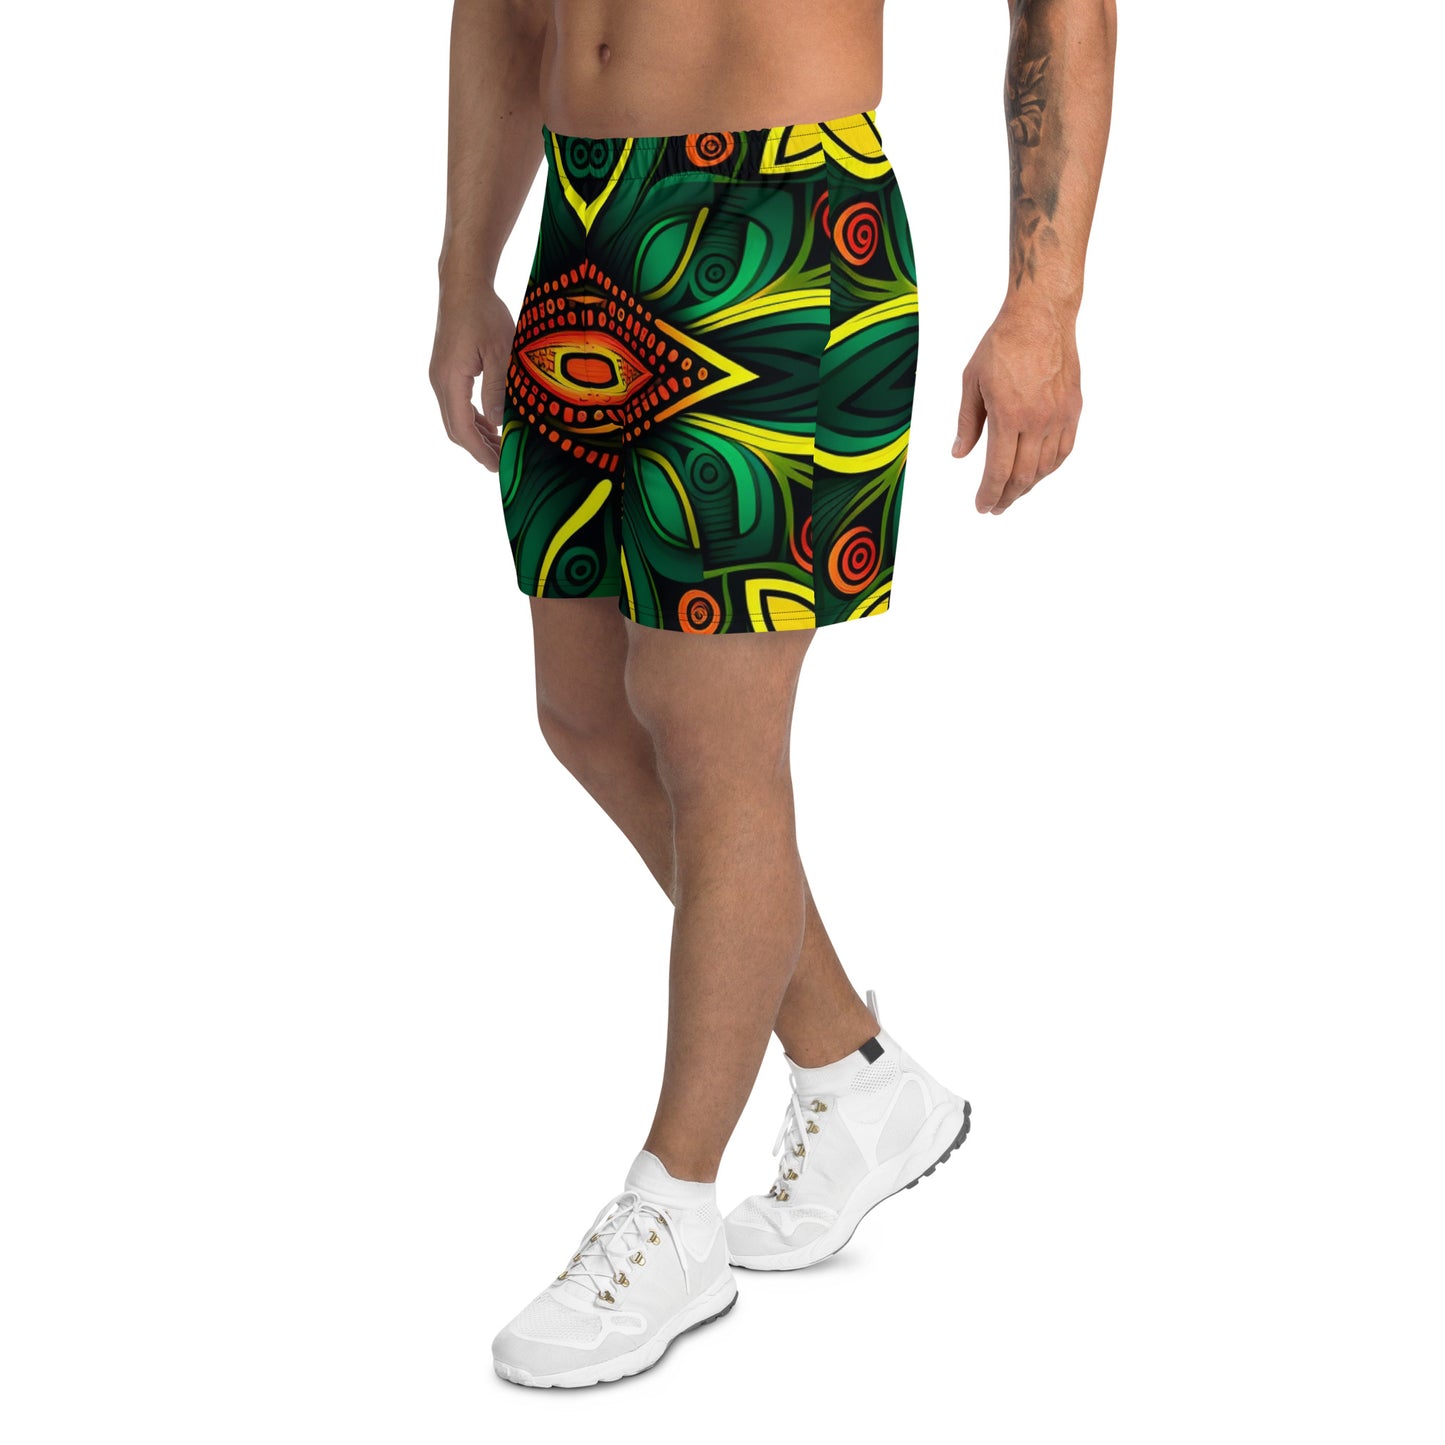 Short pour homme en polyester recyclé vert rouge jaune imprimé tissu africain